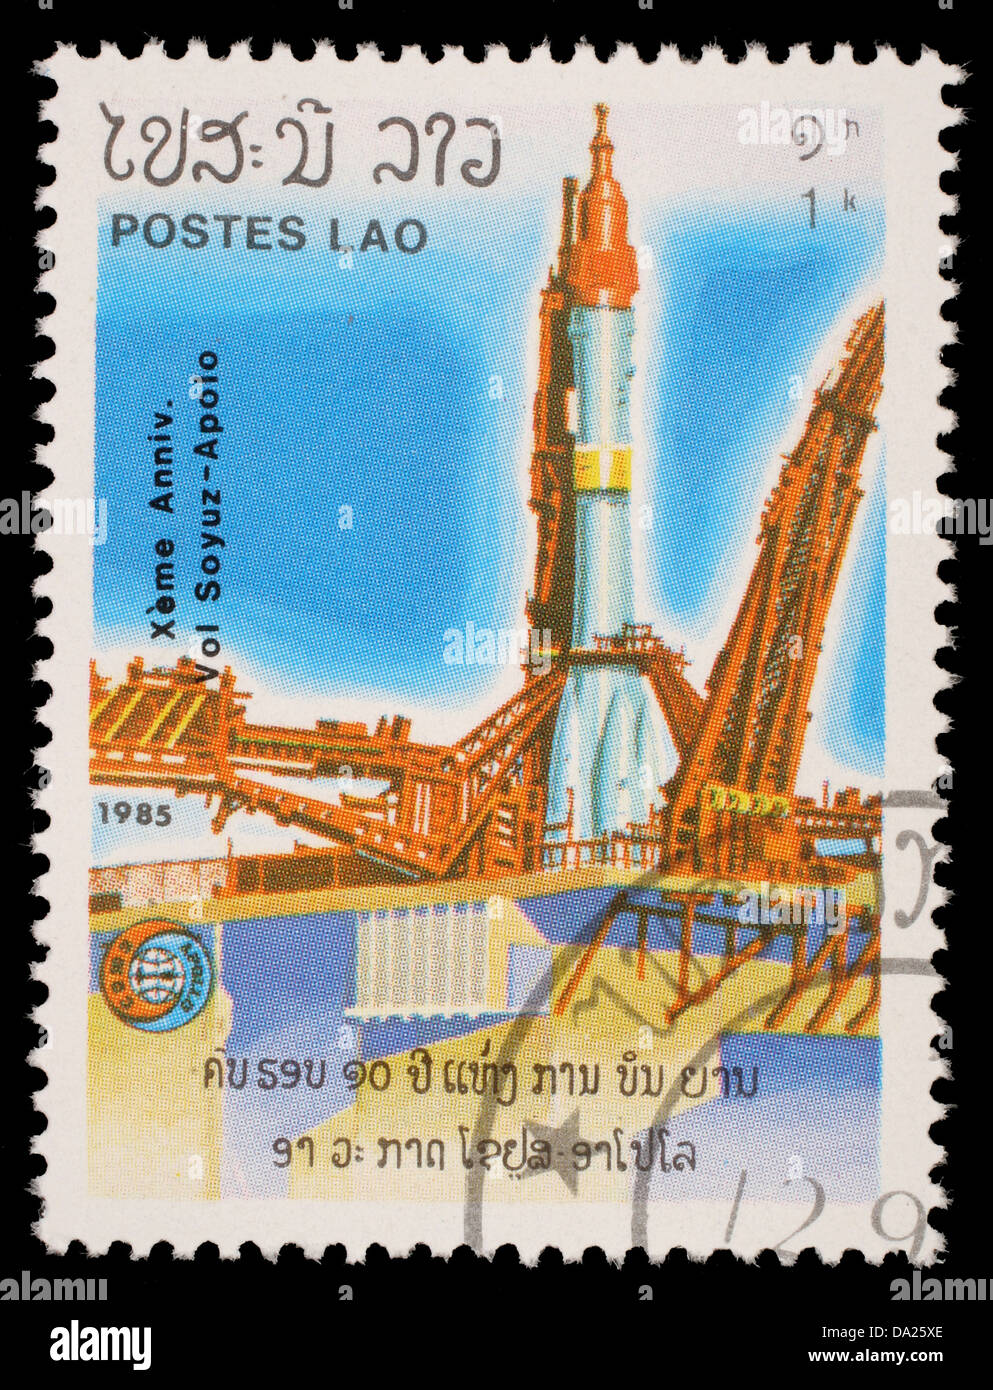 LAOS-VERS 1985 : timbre imprimé dans le Laos, est représenté le lancement du programme Apollo vaisseau spatial Apollo-soyouz, vers 1985 Banque D'Images